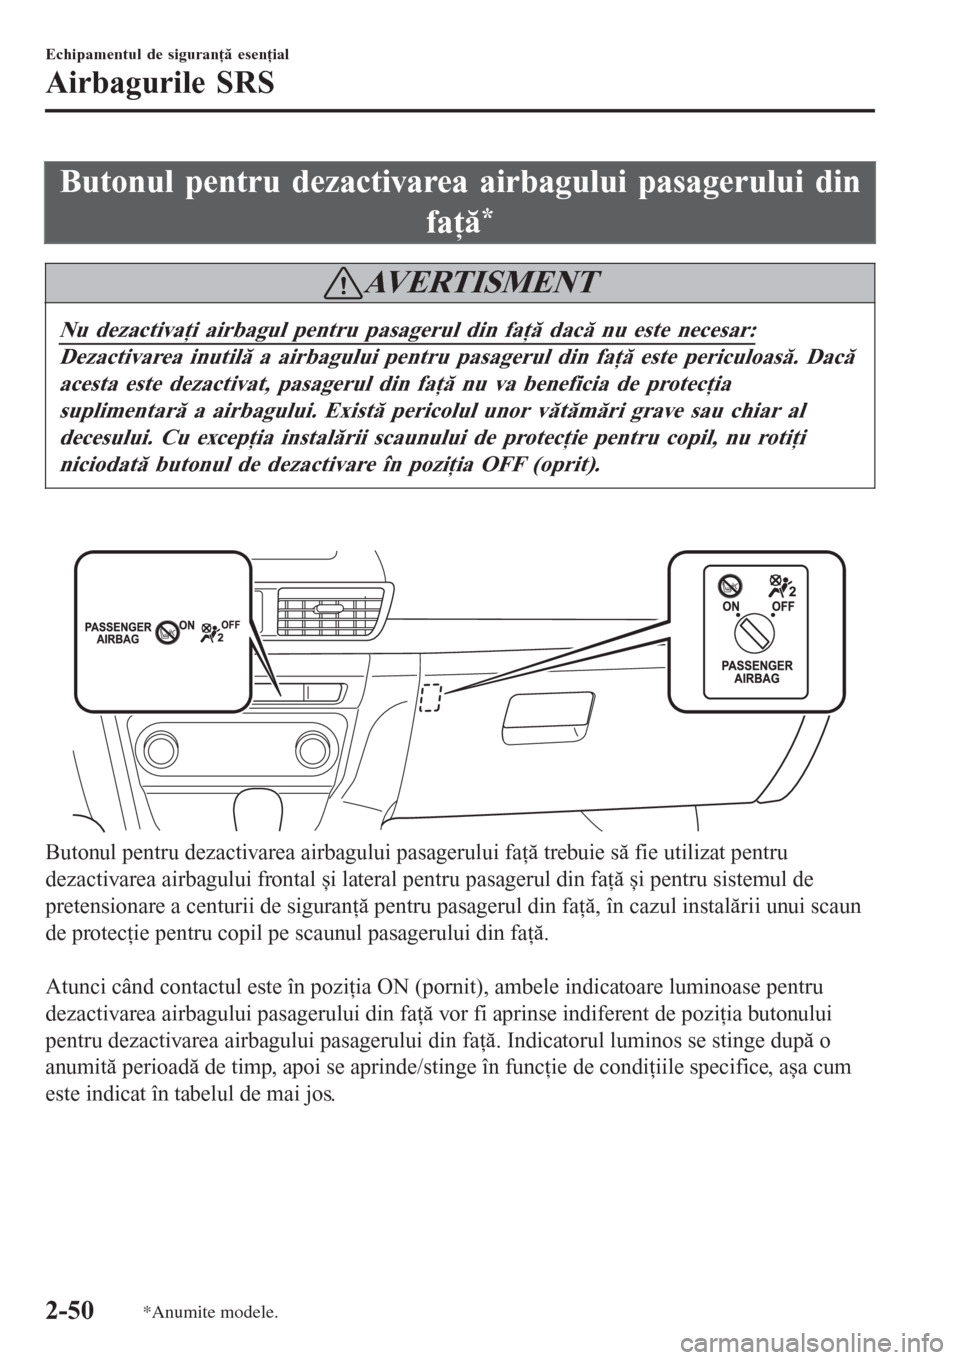 MAZDA MODEL 3 HATCHBACK 2015  Ghid introductiv (in romanian) Butonul pentru dezactivarea airbagului pasagerului din
faţă
*
AVERTISMENT
Nu dezactivaţi airbagul pentru pasagerul din faţă dacă nu este necesar:
Dezactivarea inutilă a airbagului pentru pasage